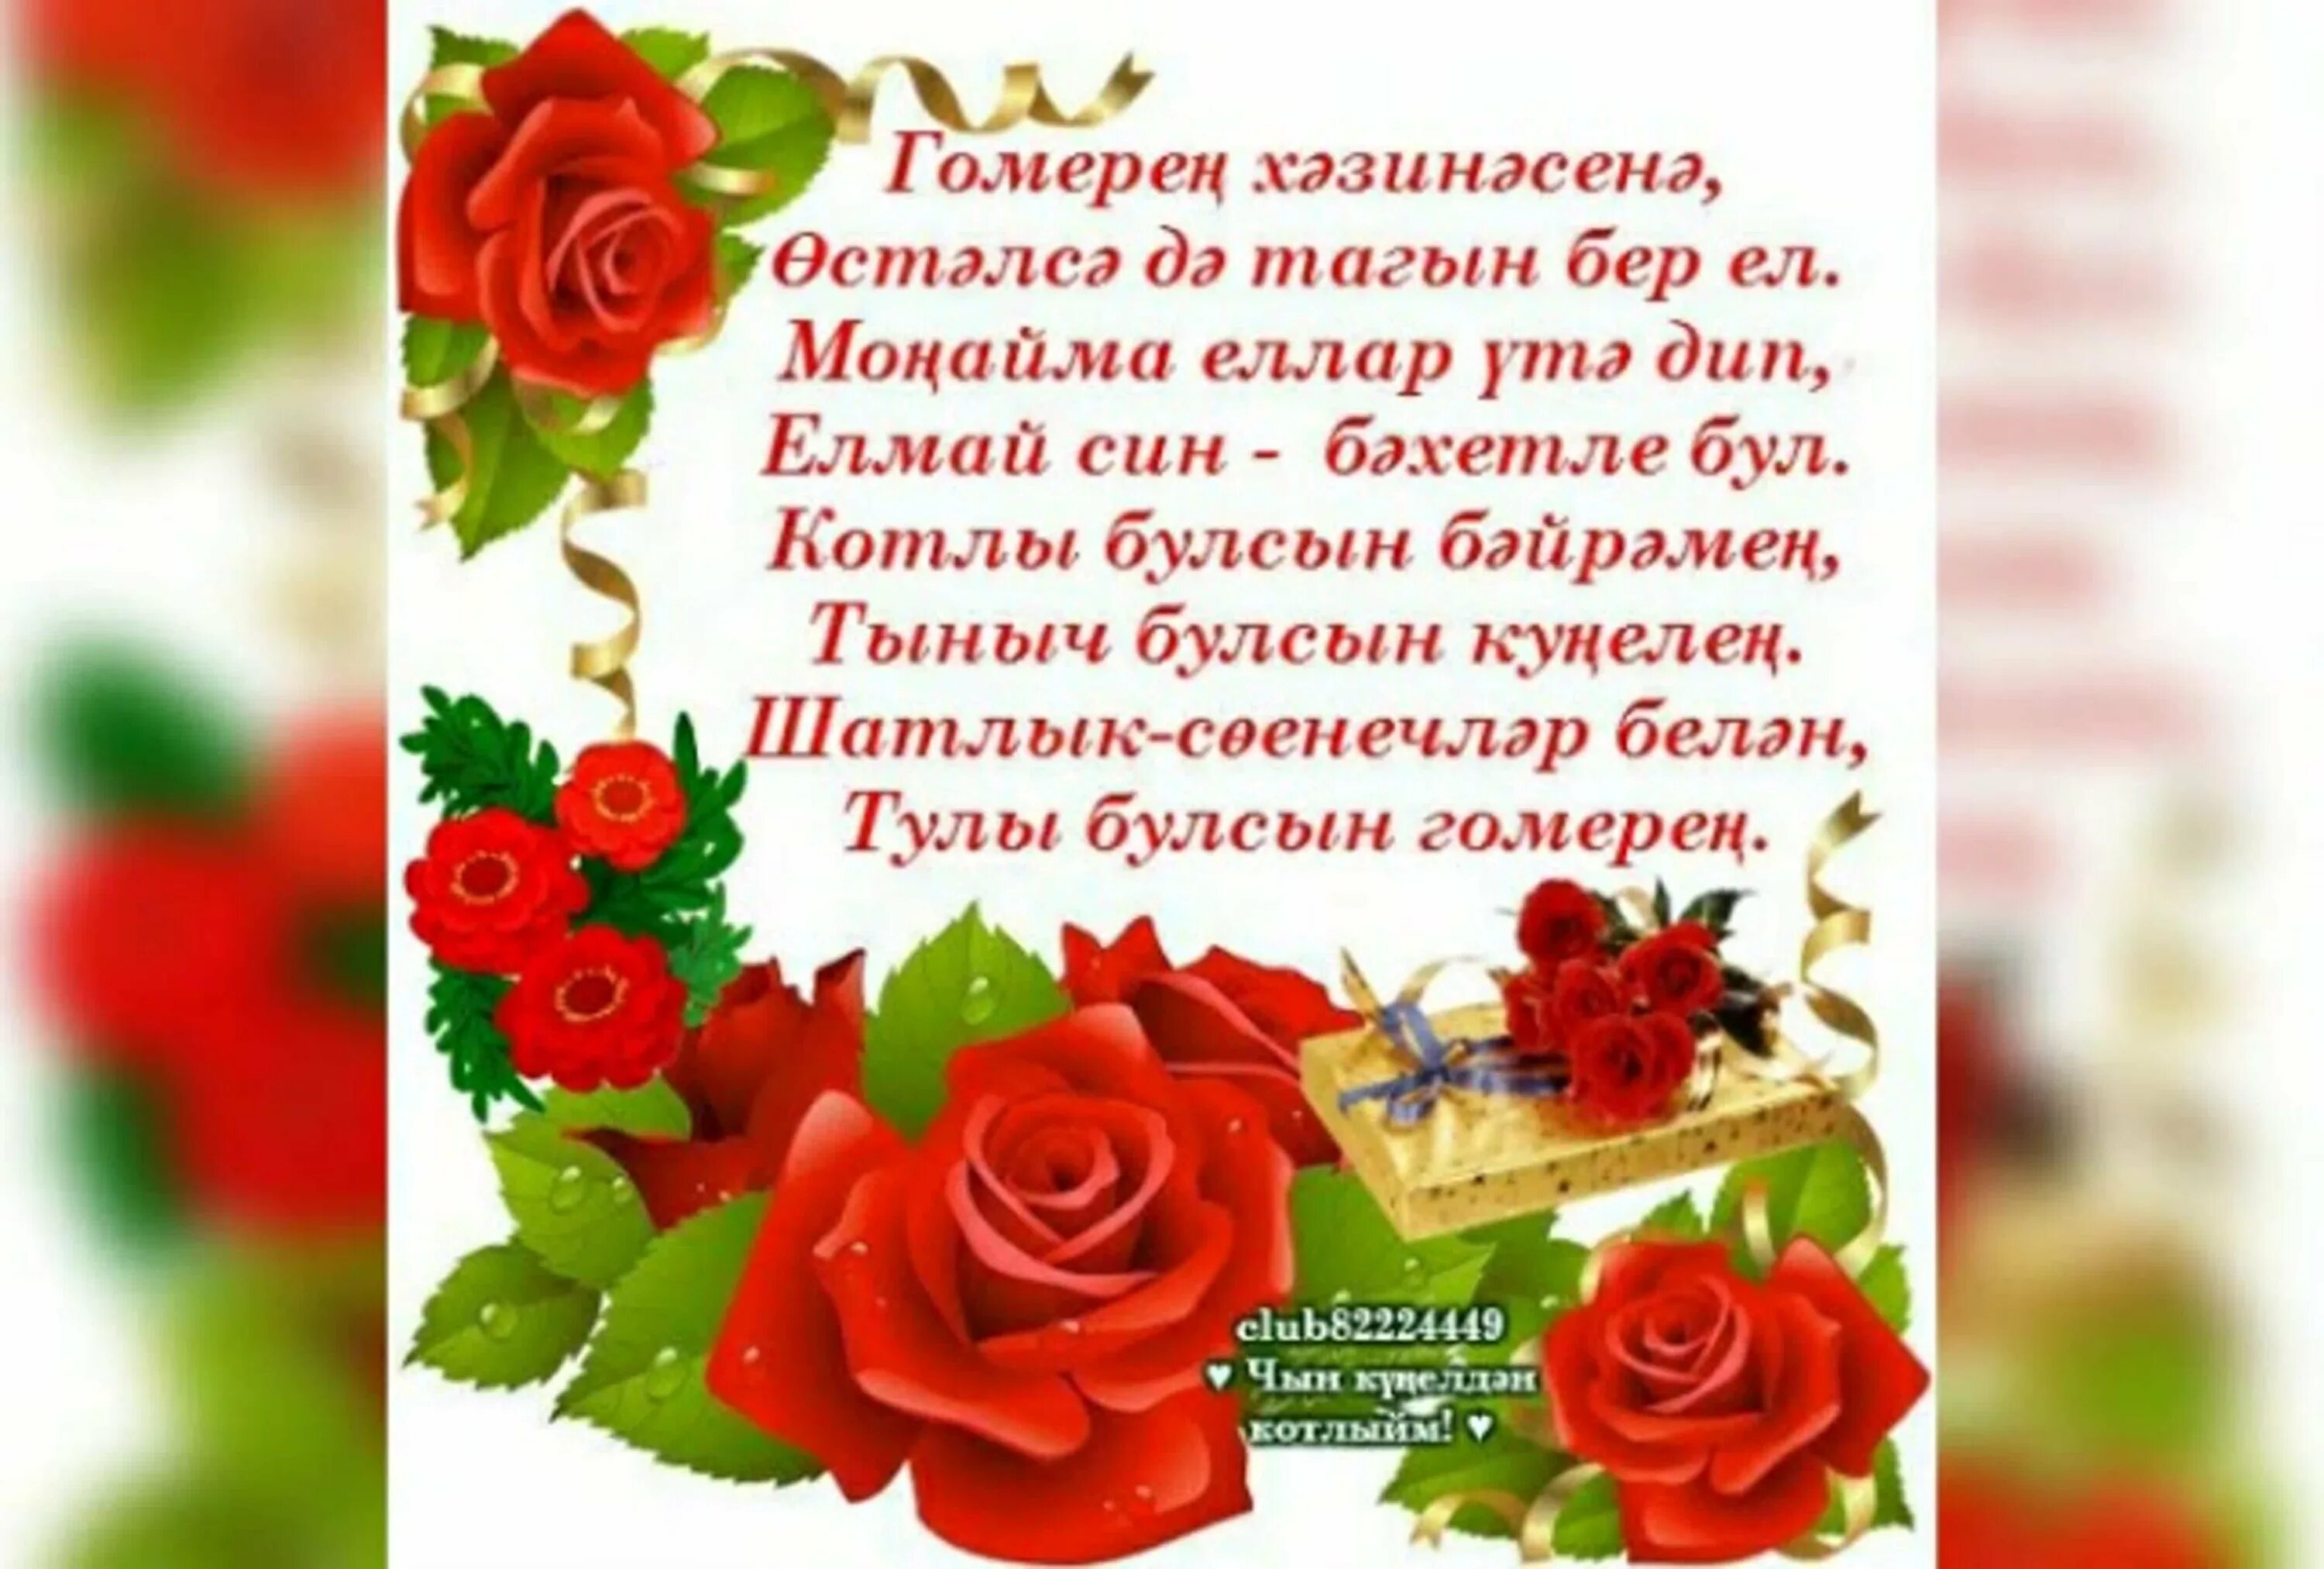 Поздравления с днем рождения на узбекском языке. Поздравления с днём рождения на татарском языке. Поздравление на татарском языке. Татарские поздравления с днем рождения. Поздравления с днём рождения женщине на татарском языке.